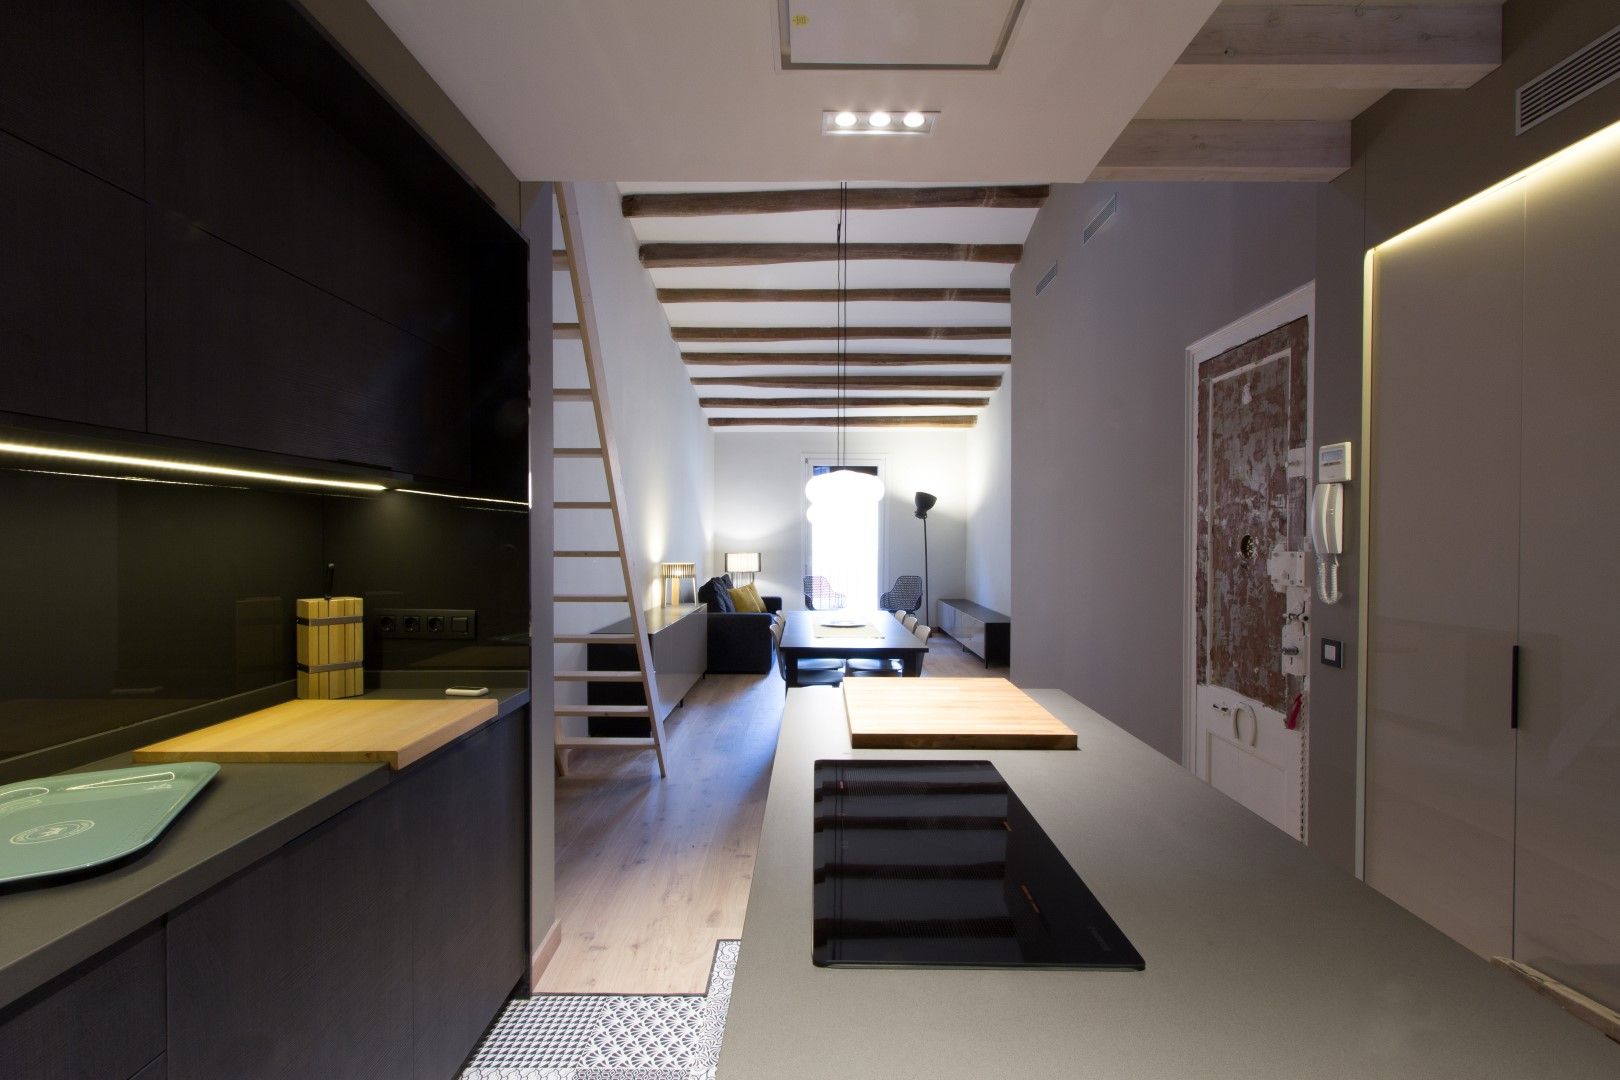 LOFT EN BARCELONA Proyecto de interiorismo para convertir un antiguo piso en un loft donde se valora la calidad del espacio, CREAPROJECTS. Interior design. CREAPROJECTS. Interior design. Built-in kitchens